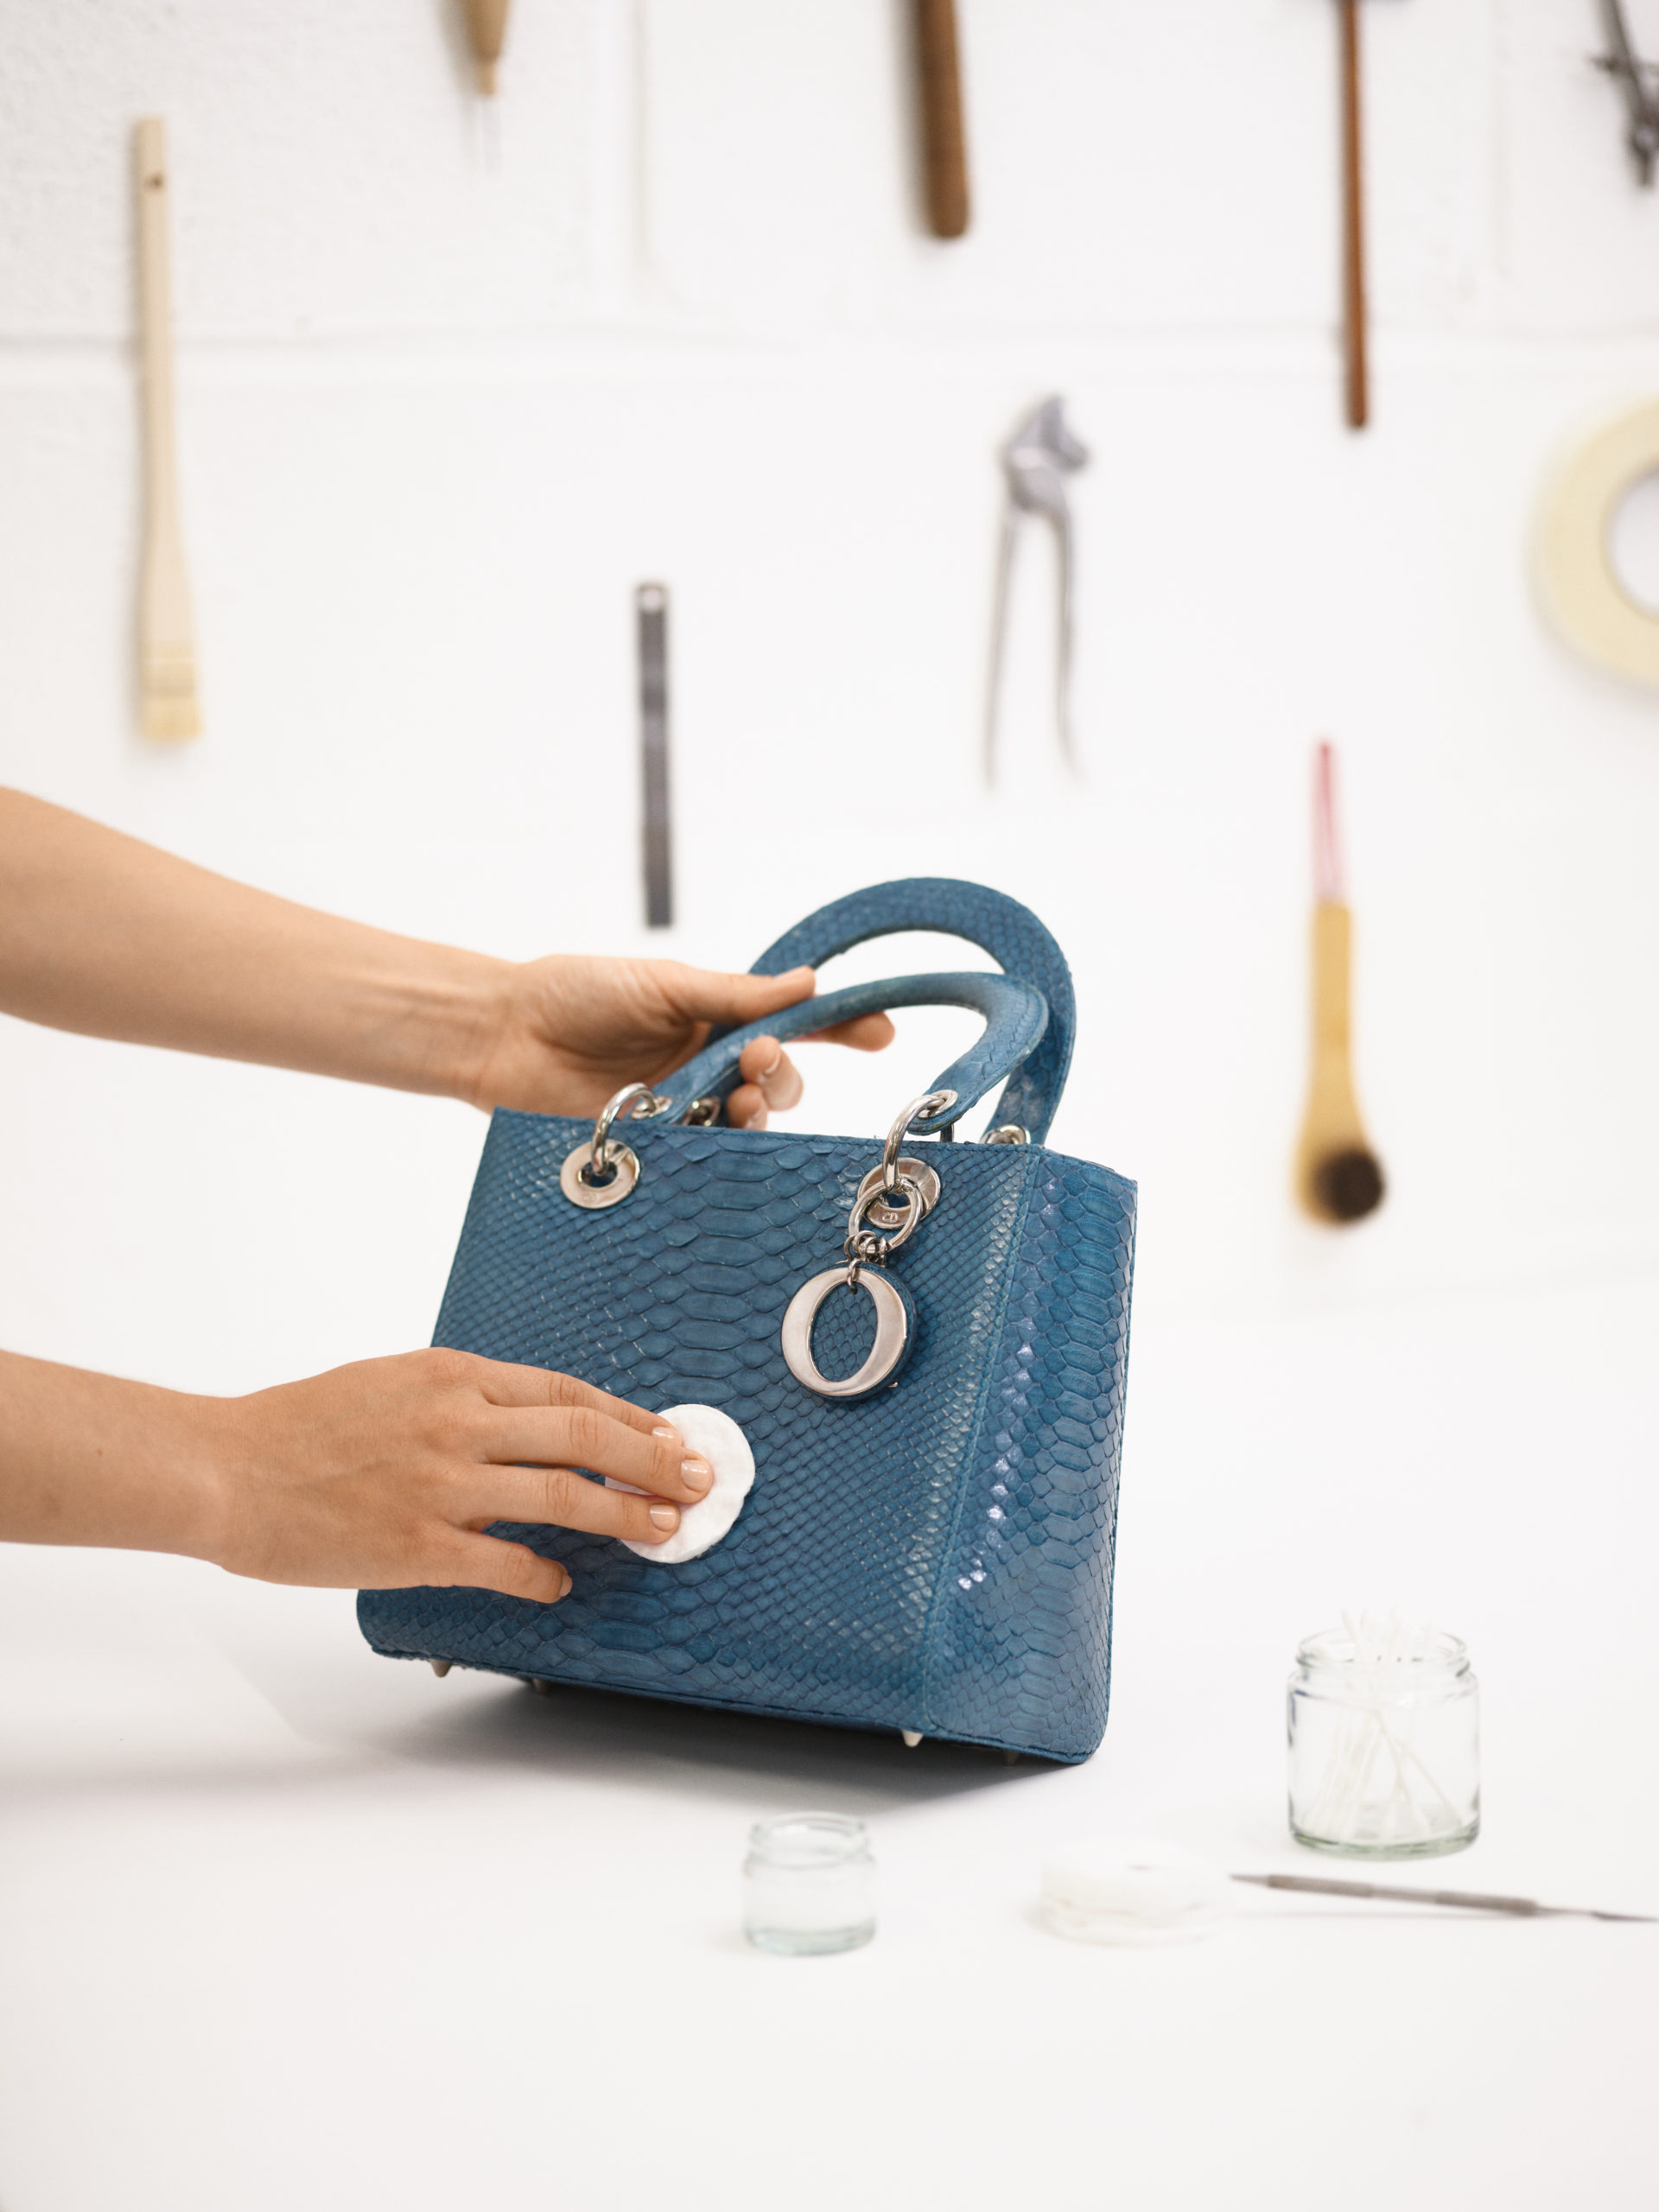 Handbag Cleaning, Repair, Repaint & Restoration by Bag Lab